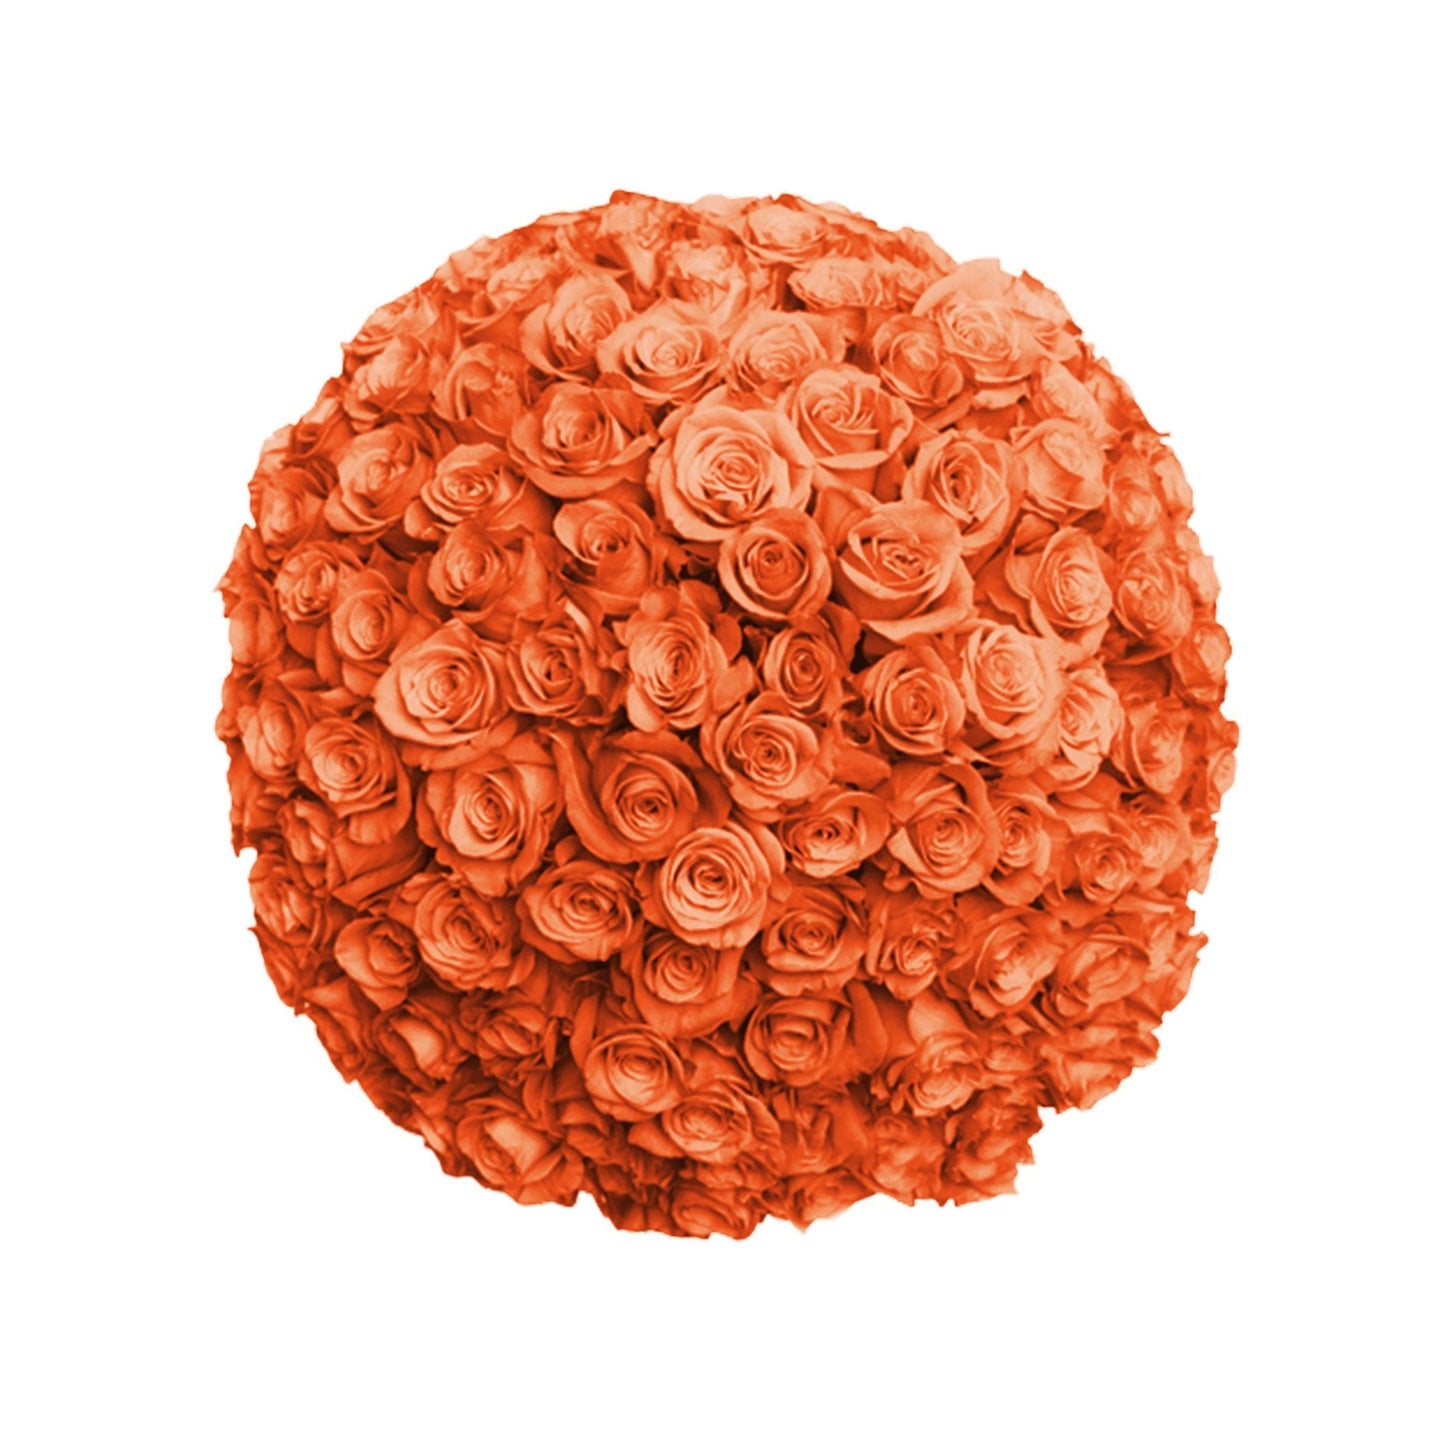 Fresh Roses in a Vase | 100 Orange Roses - Floral_Arrangement - Flower Delivery NYC